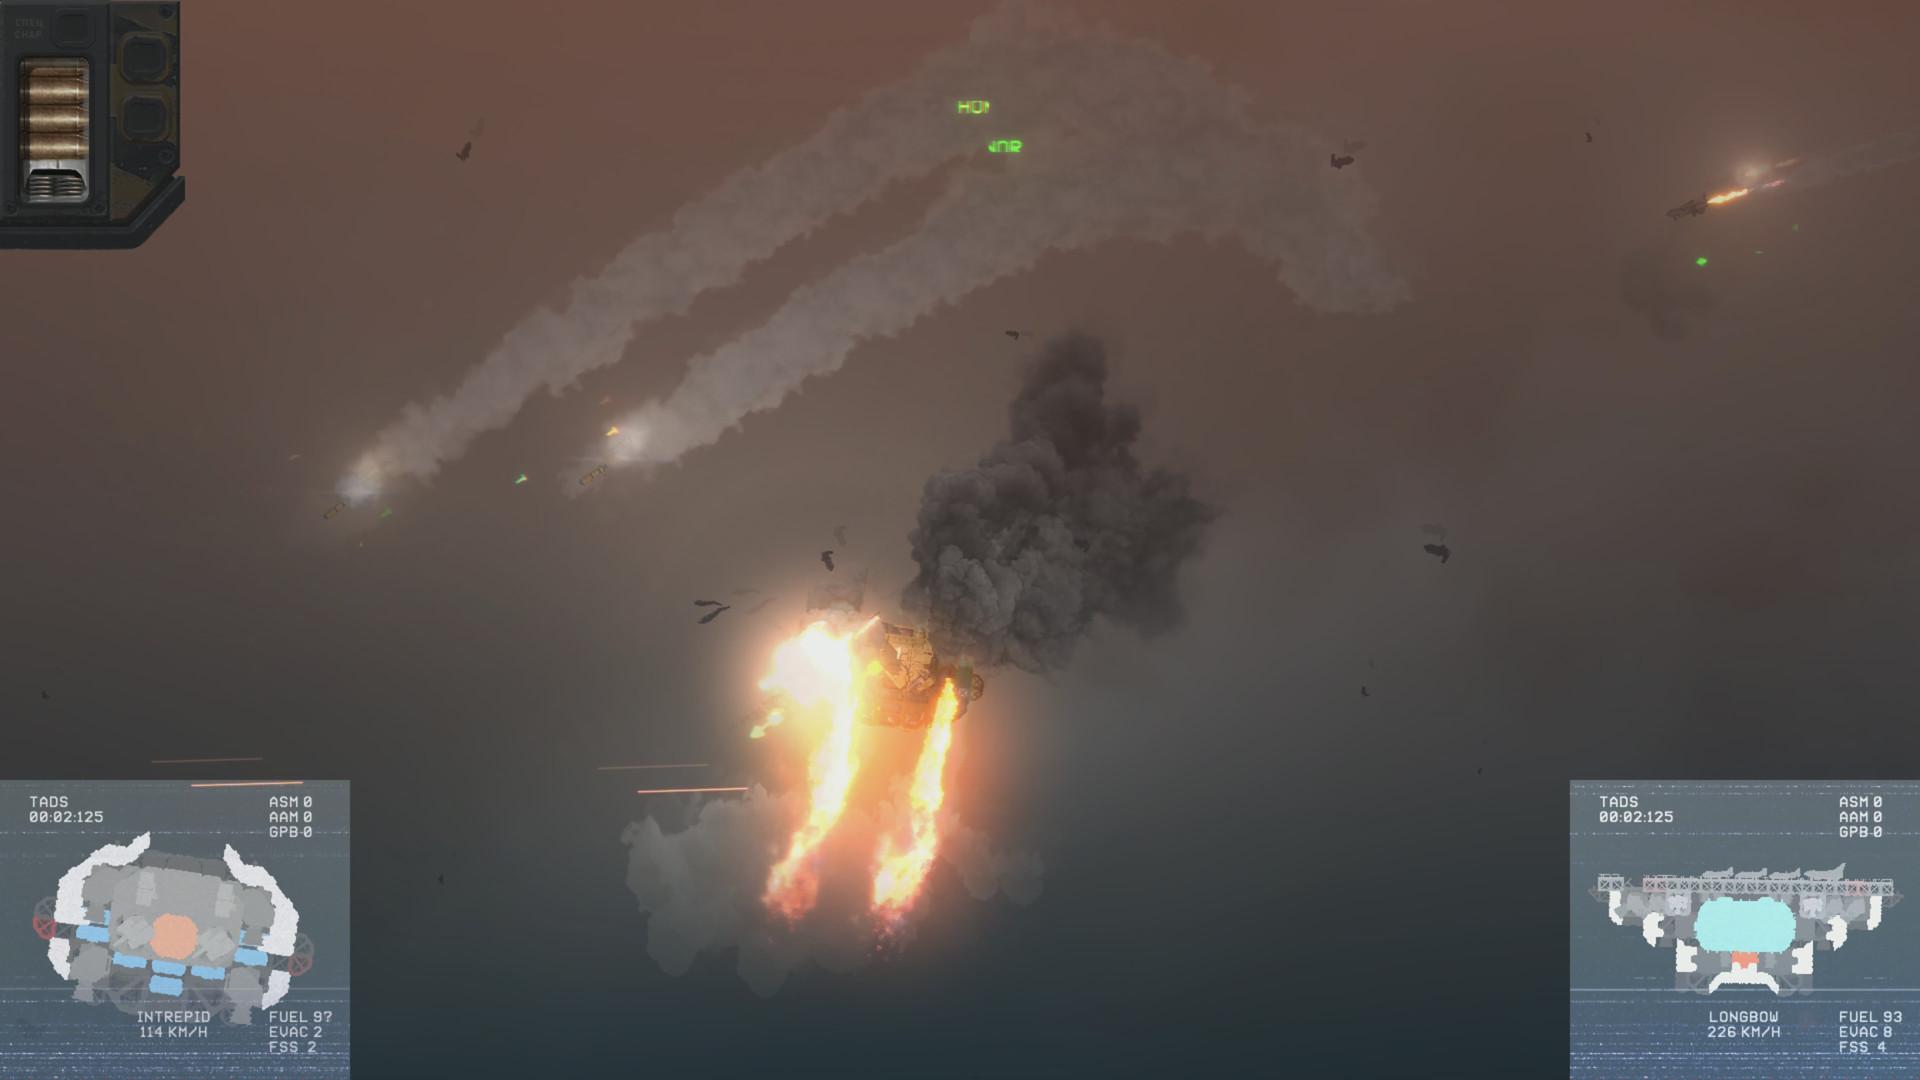 Screenshot №6 from game HighFleet